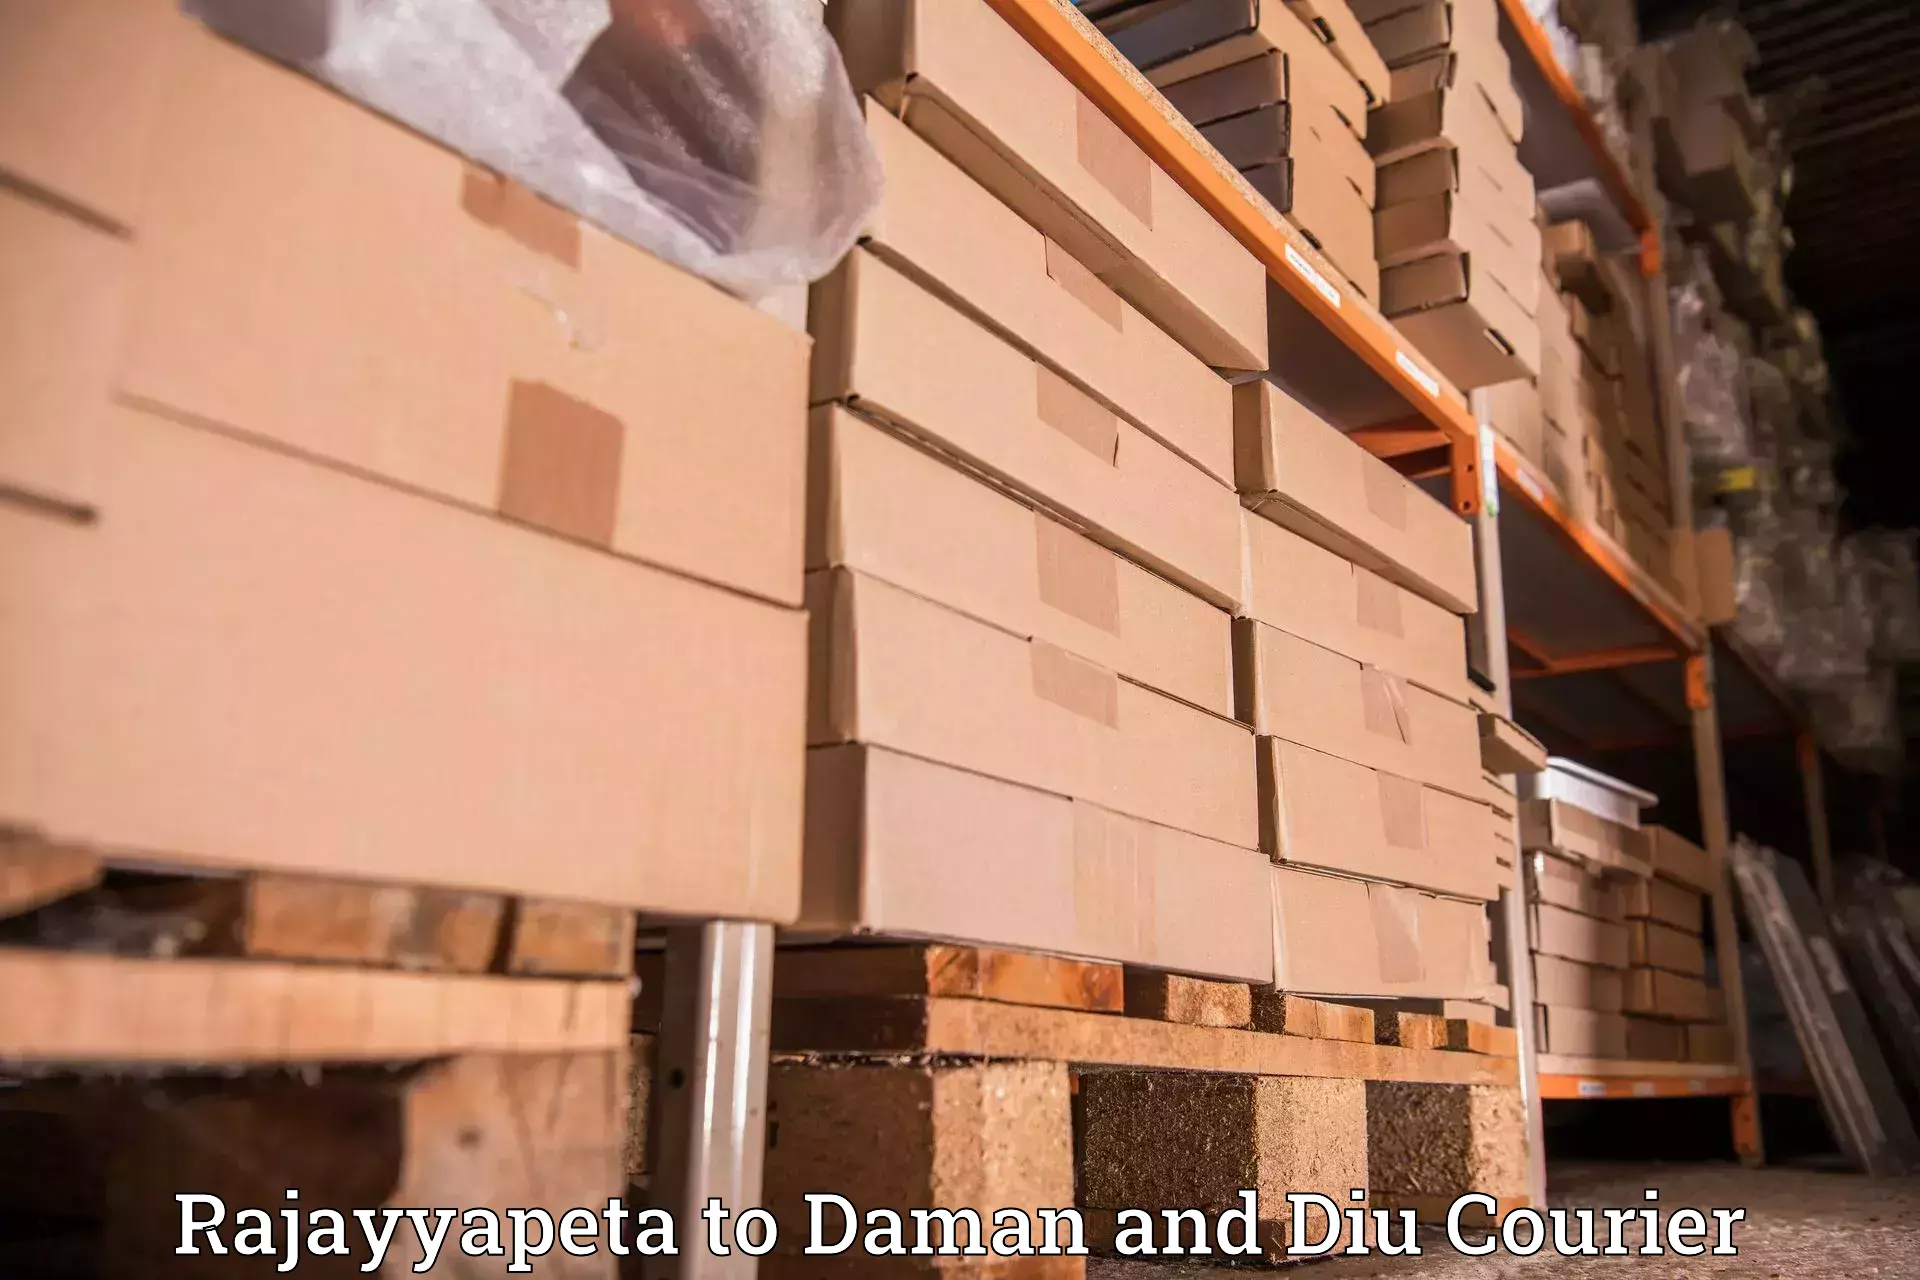 Customer-centric shipping Rajayyapeta to Daman and Diu